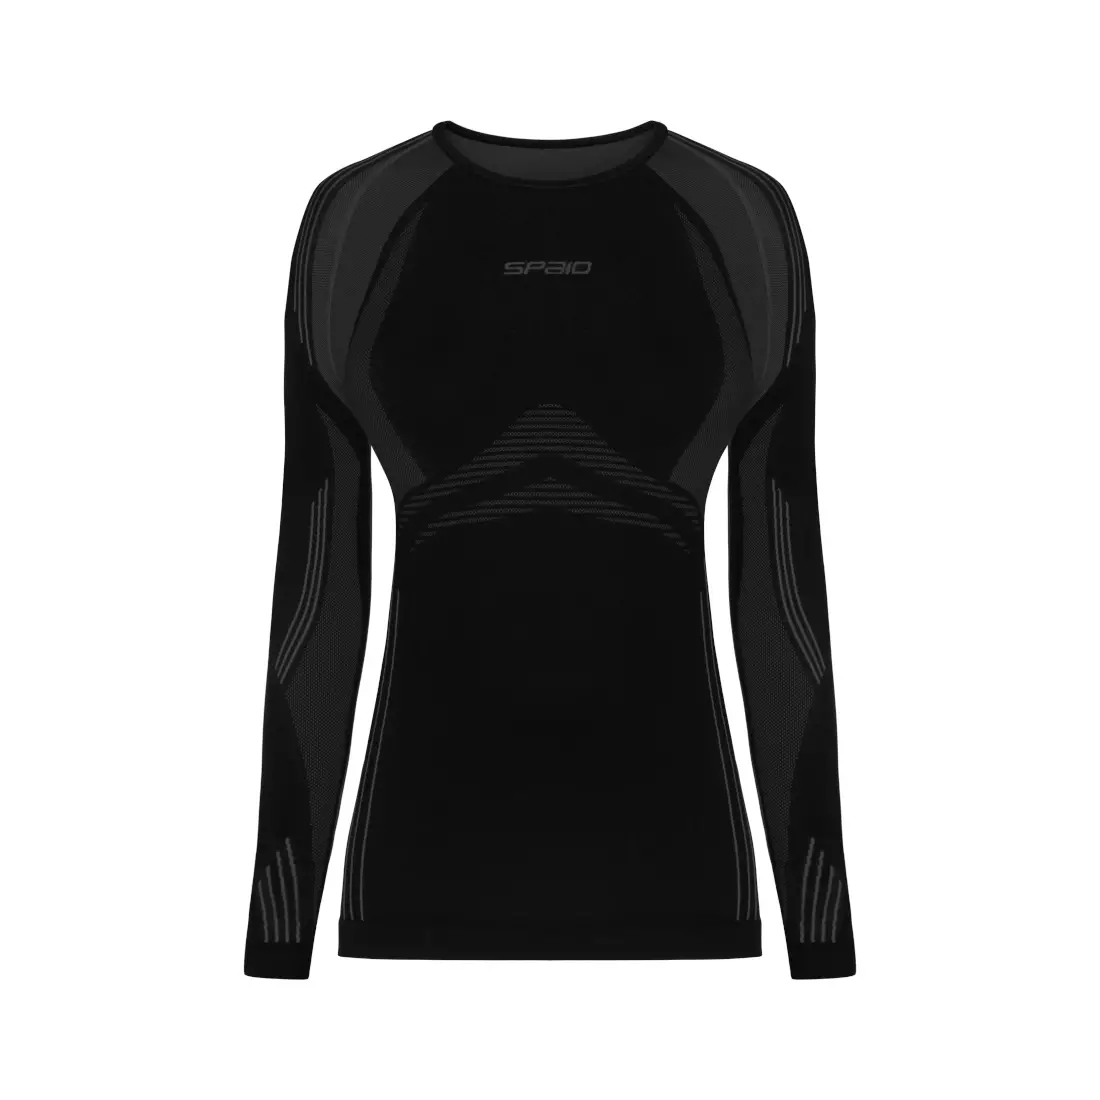 SPAIO termoaktívne spodné prádlo, dámske tričko POWERFUL čierno-šedé